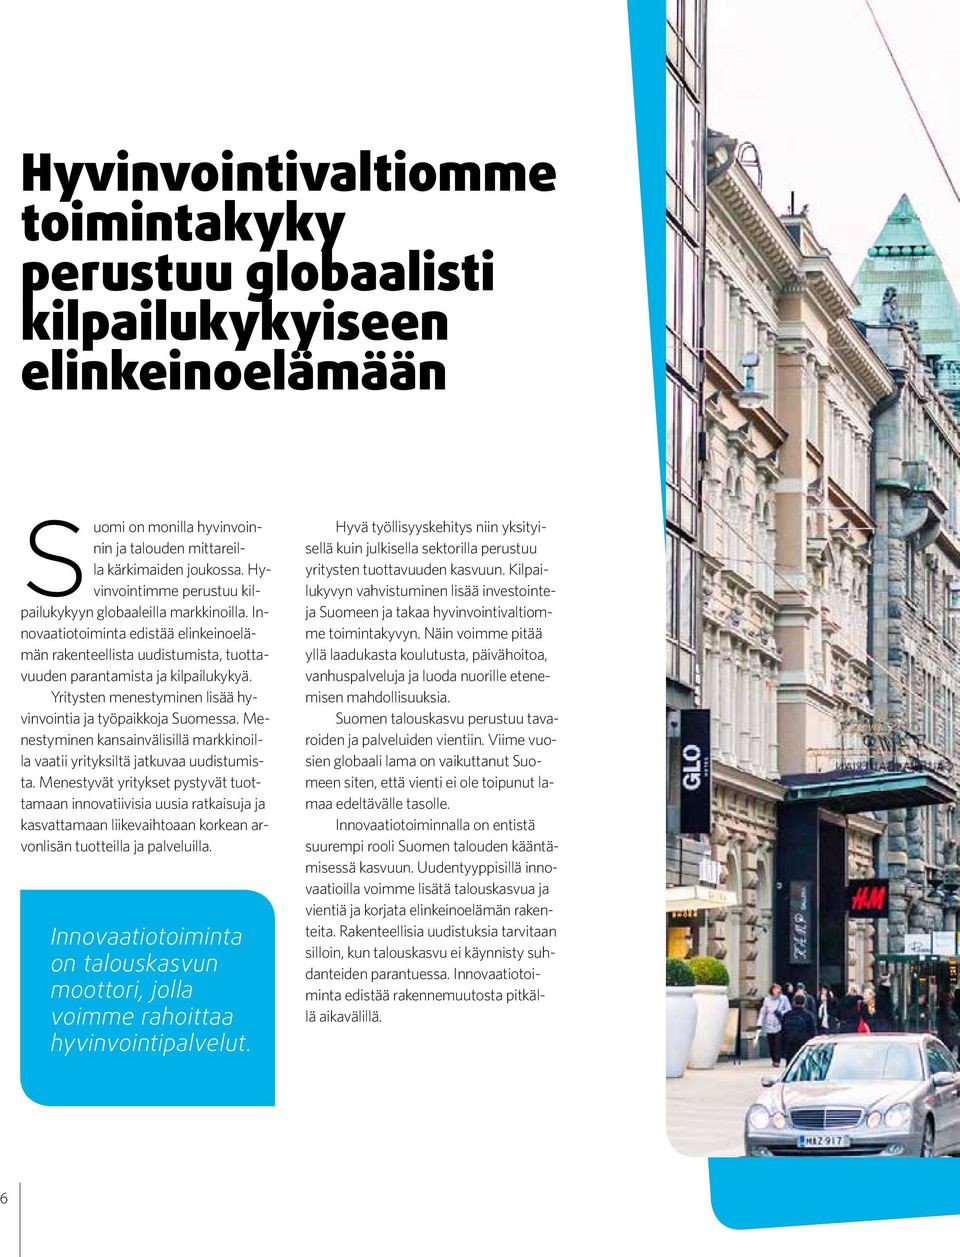 Yritysten menestyminen lisää hyvinvointia ja työpaikkoja Suomessa. Menestyminen kansainvälisillä markkinoilla vaatii yrityksiltä jatkuvaa uudistumista.